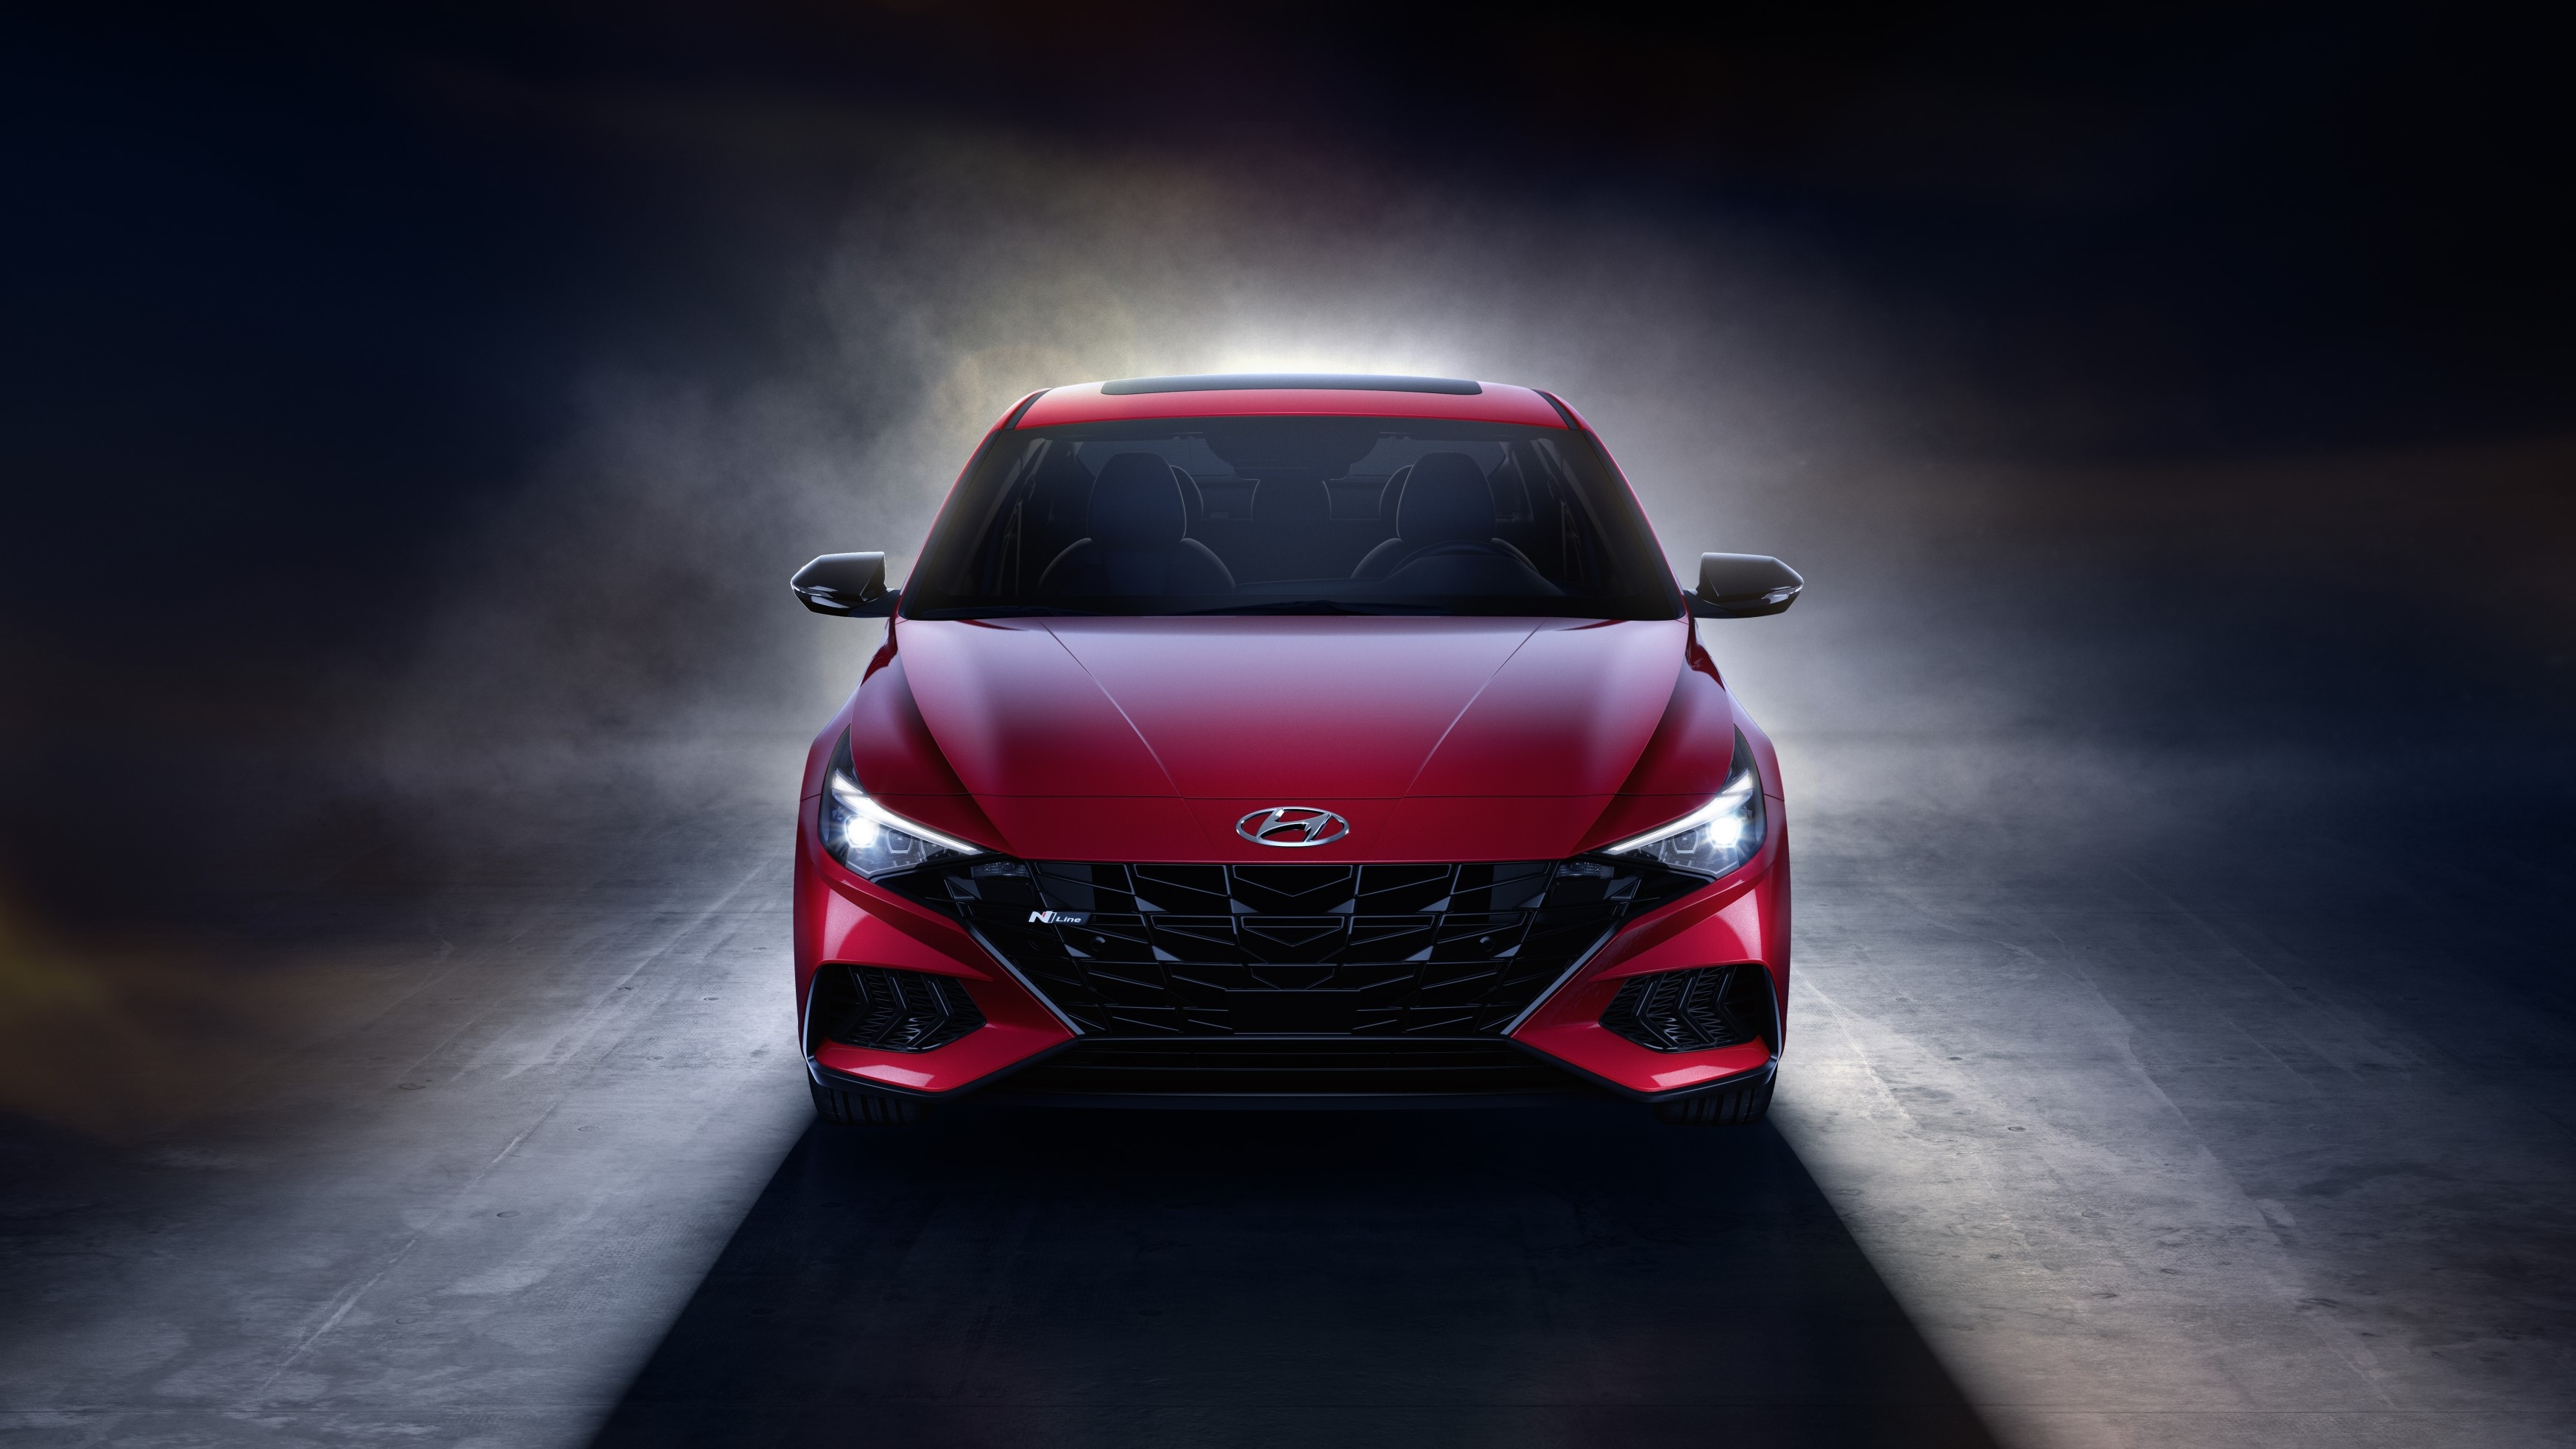 Elantra N Line Sedan Next Step for Hyundai Performance